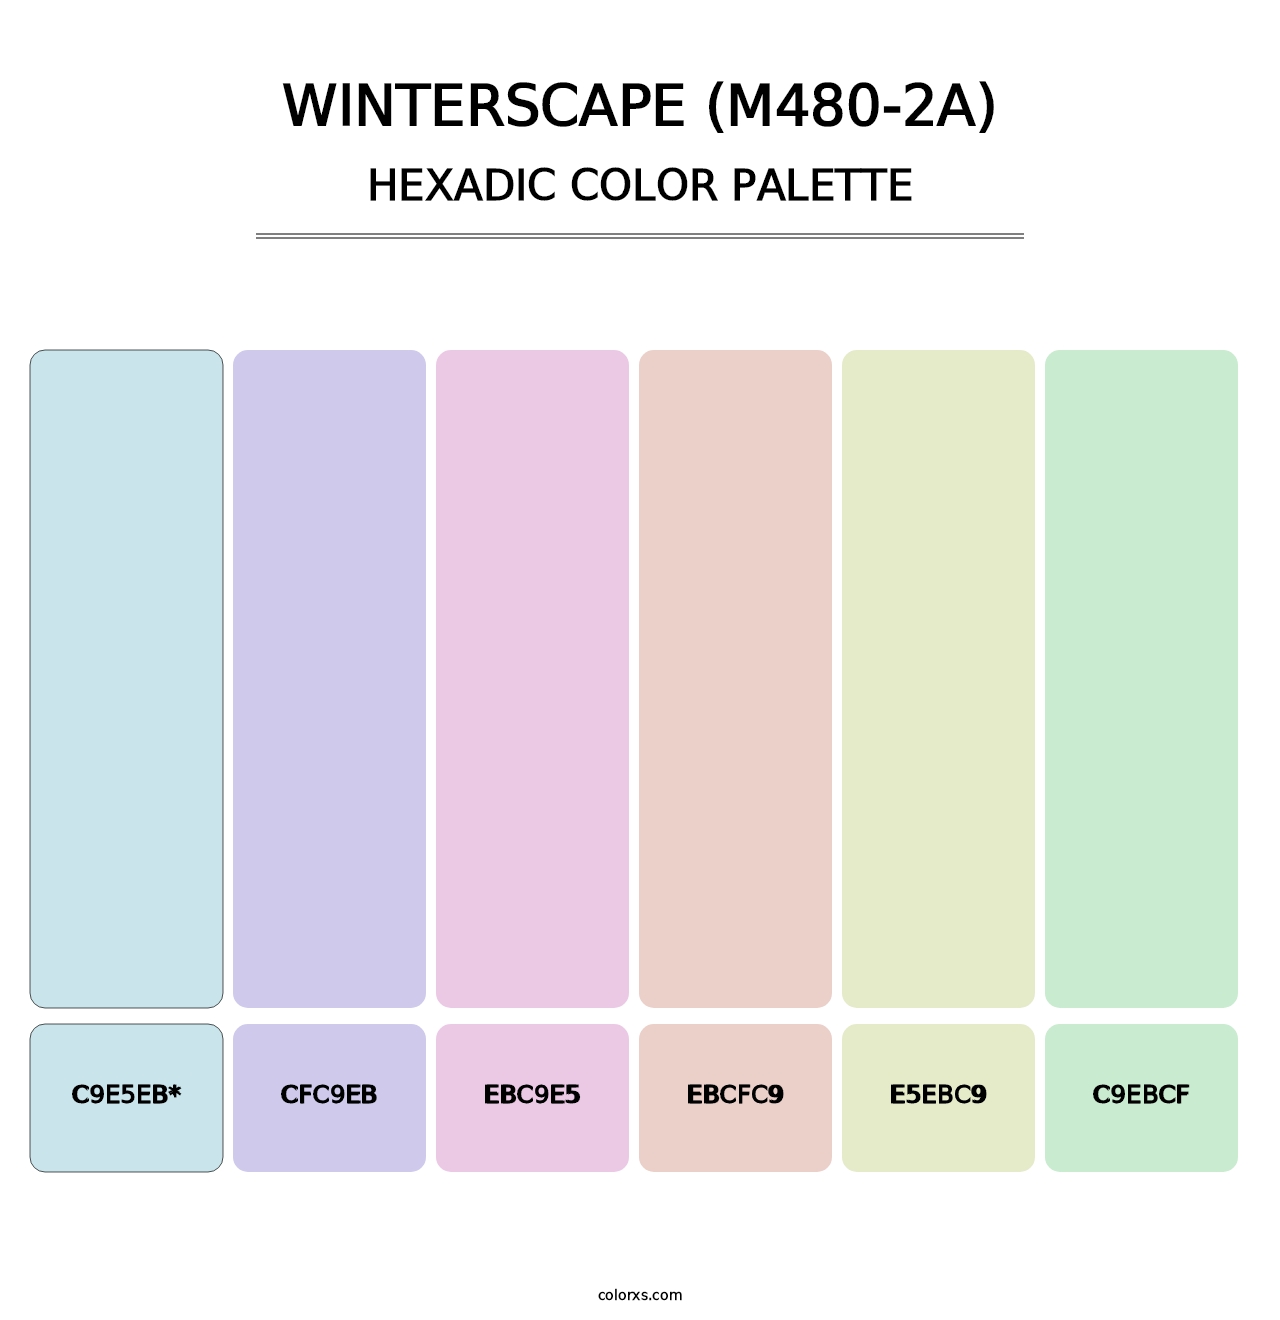 Winterscape (M480-2A) - Hexadic Color Palette